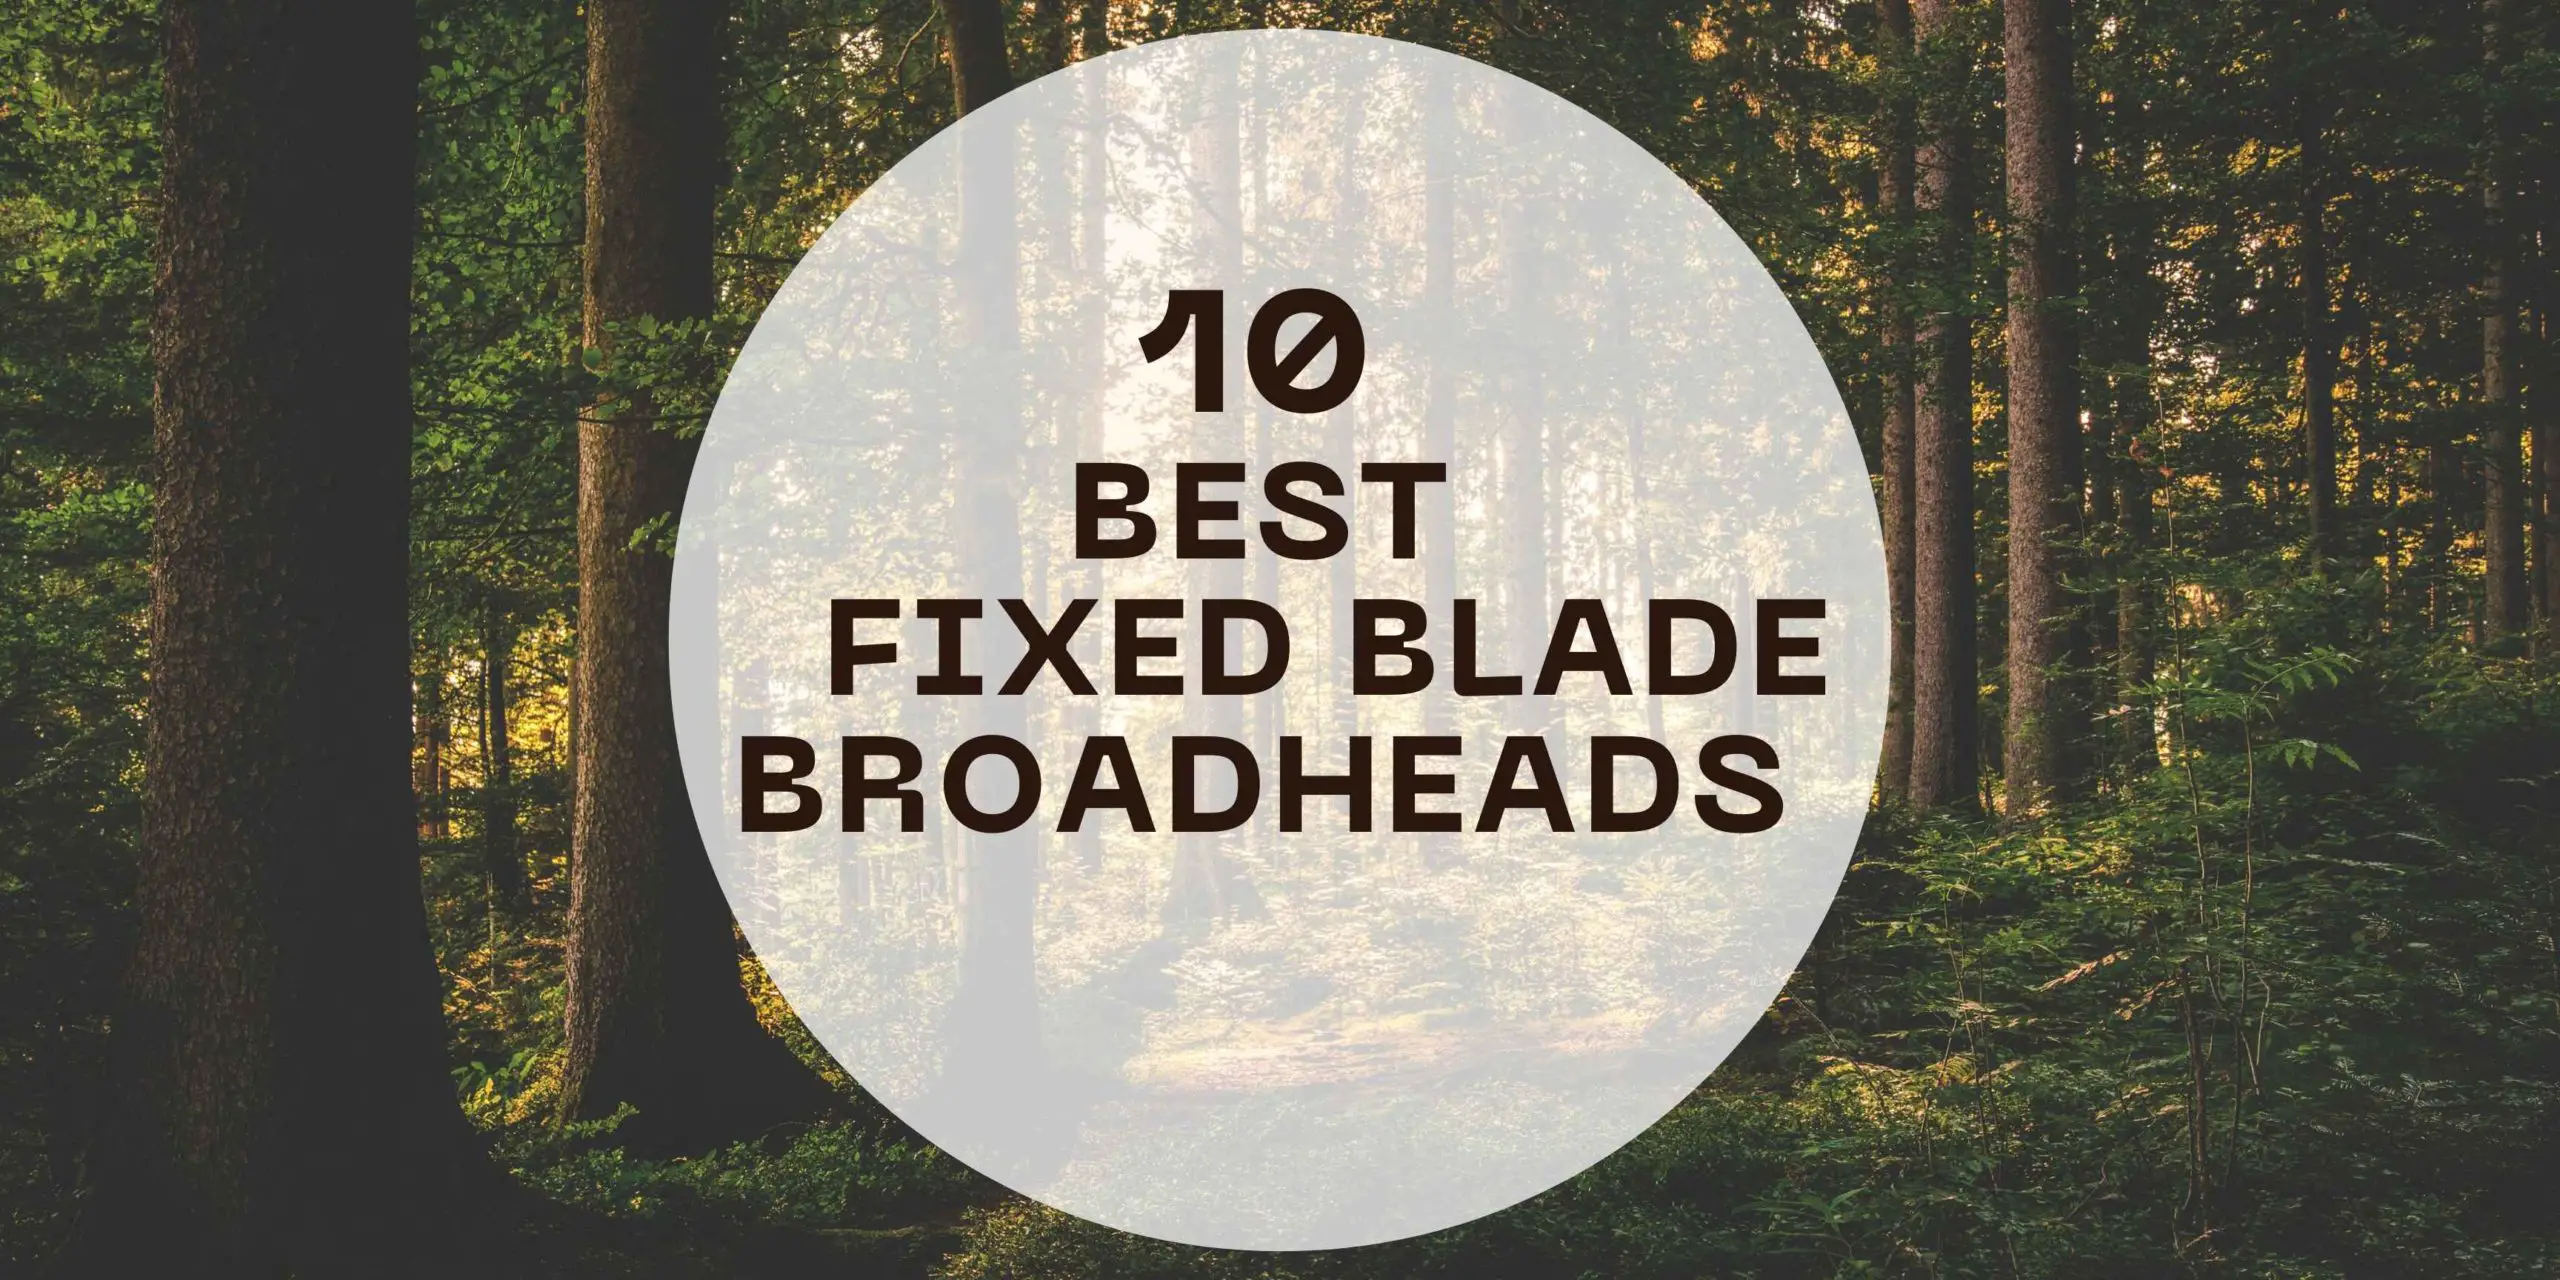 BEST FIXED BLADE BROADHEADS